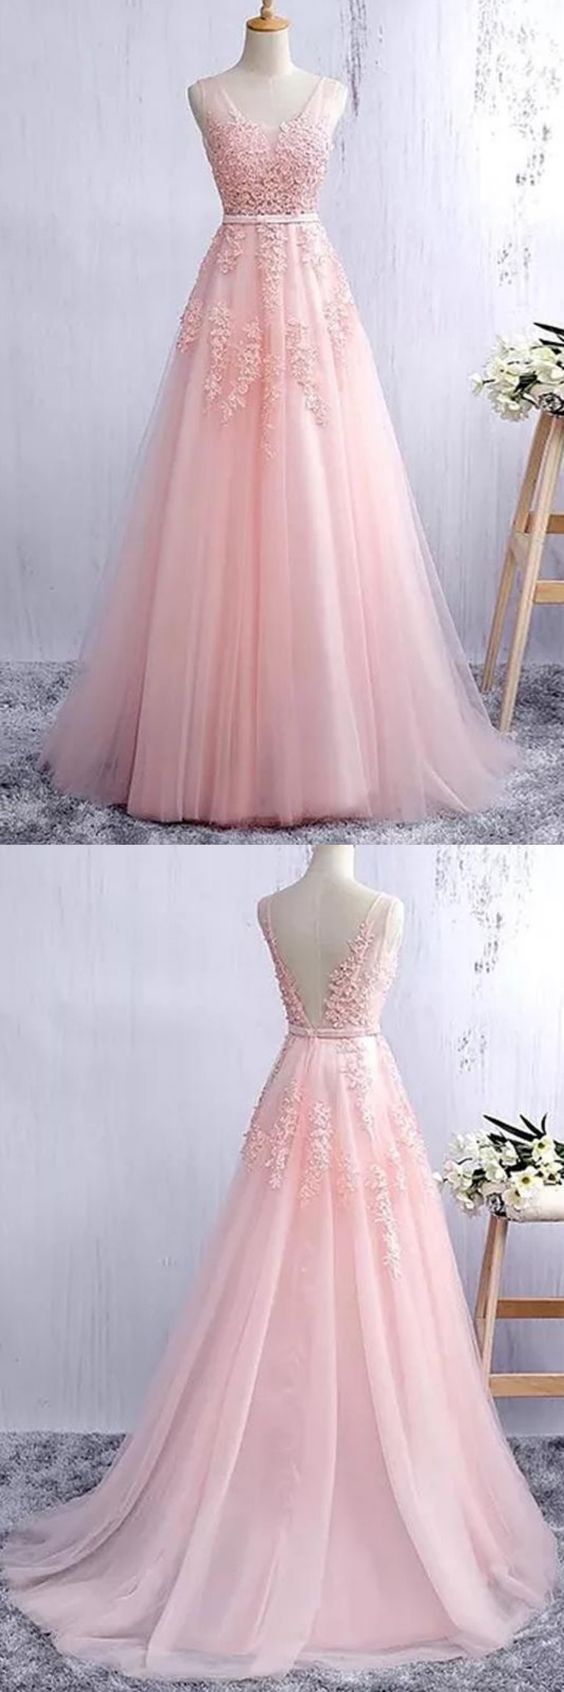 Convertible Pink Sweet 16 Dress Cinderella Ball Gown Debut Dresses 222 –  Viniodress